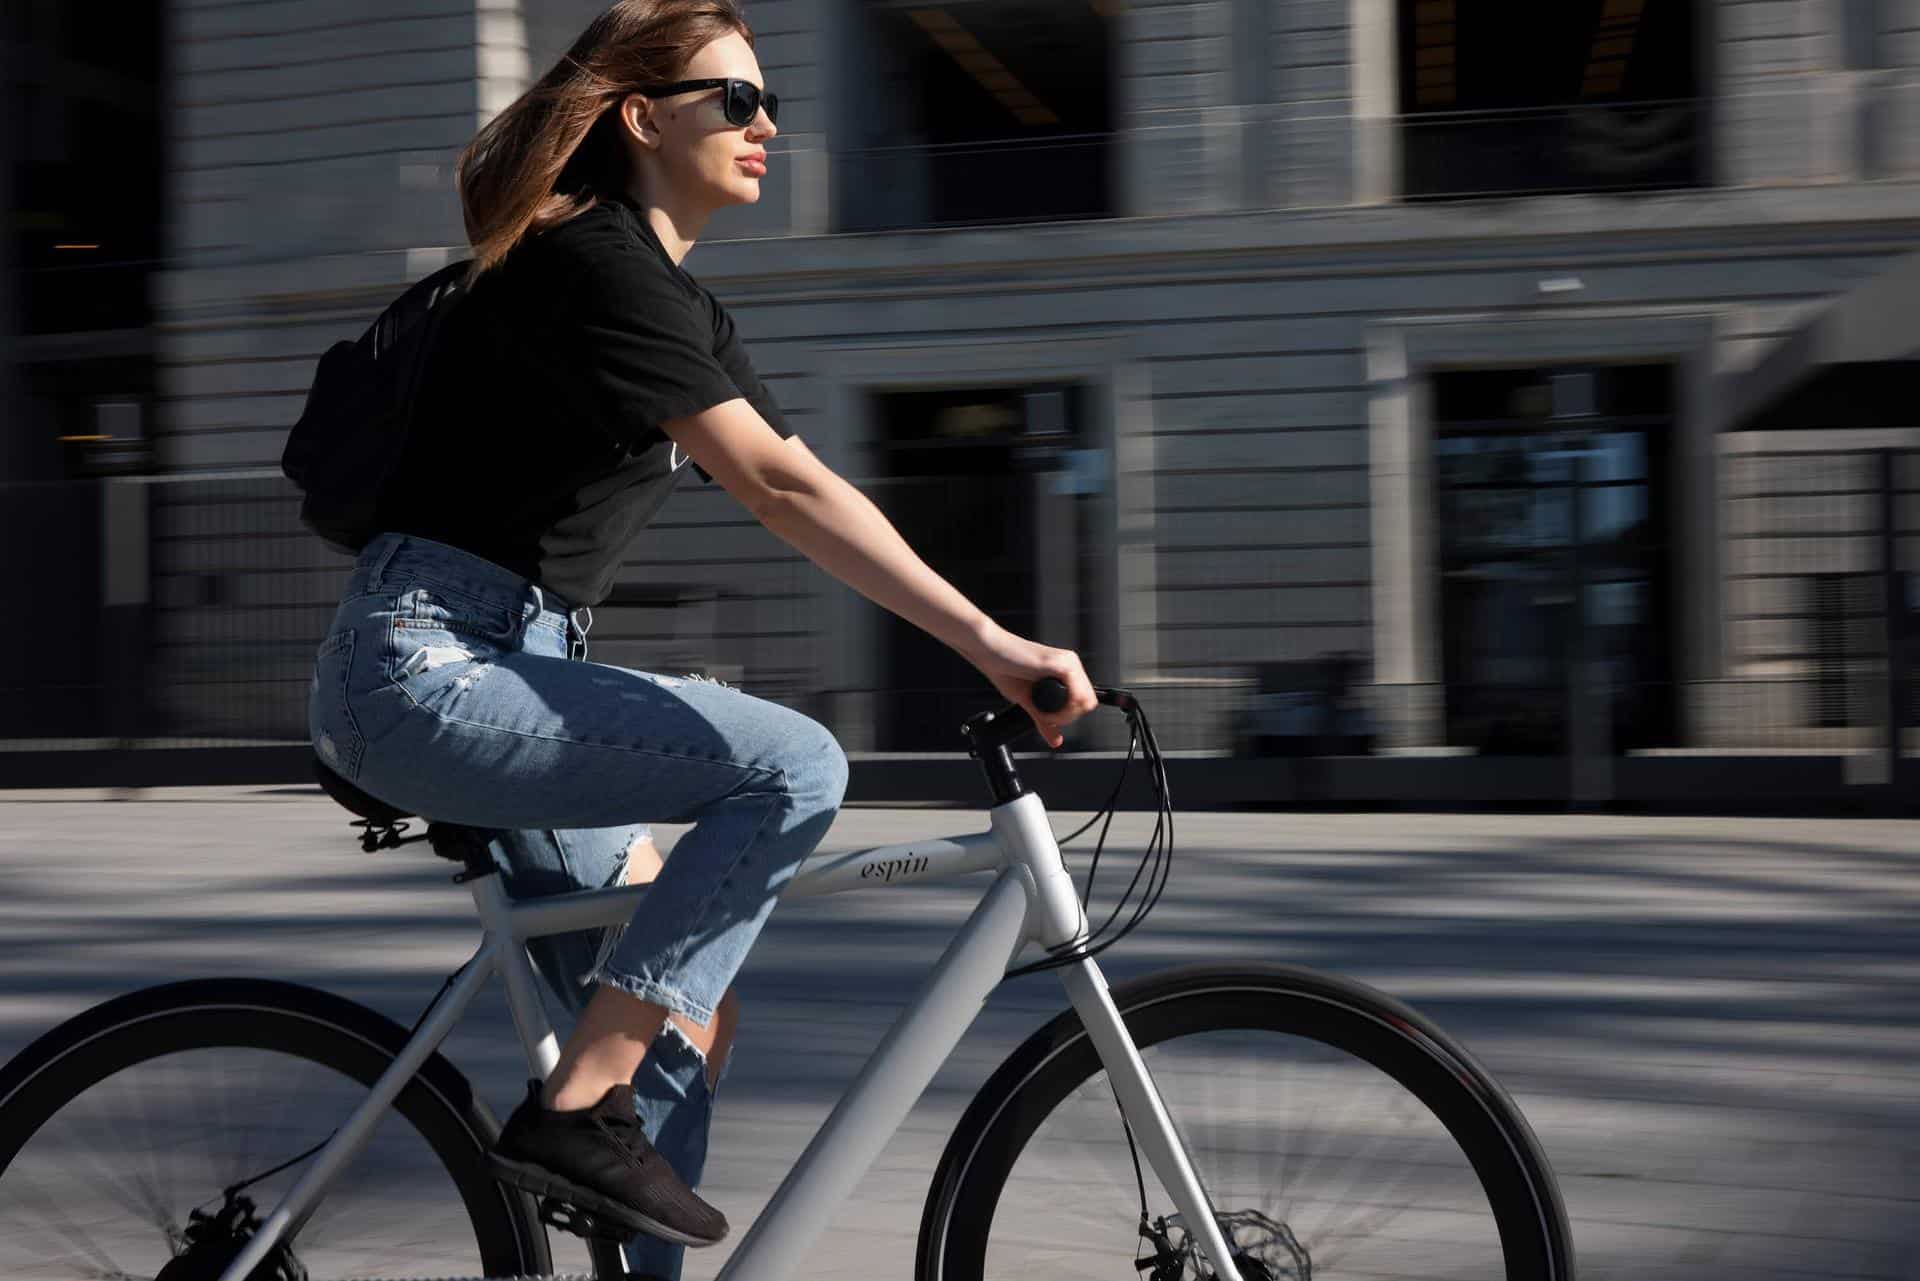 overskud forfatter aktivt Cykelleje i Hamborg - sådan lejer man cykel i Hamborg